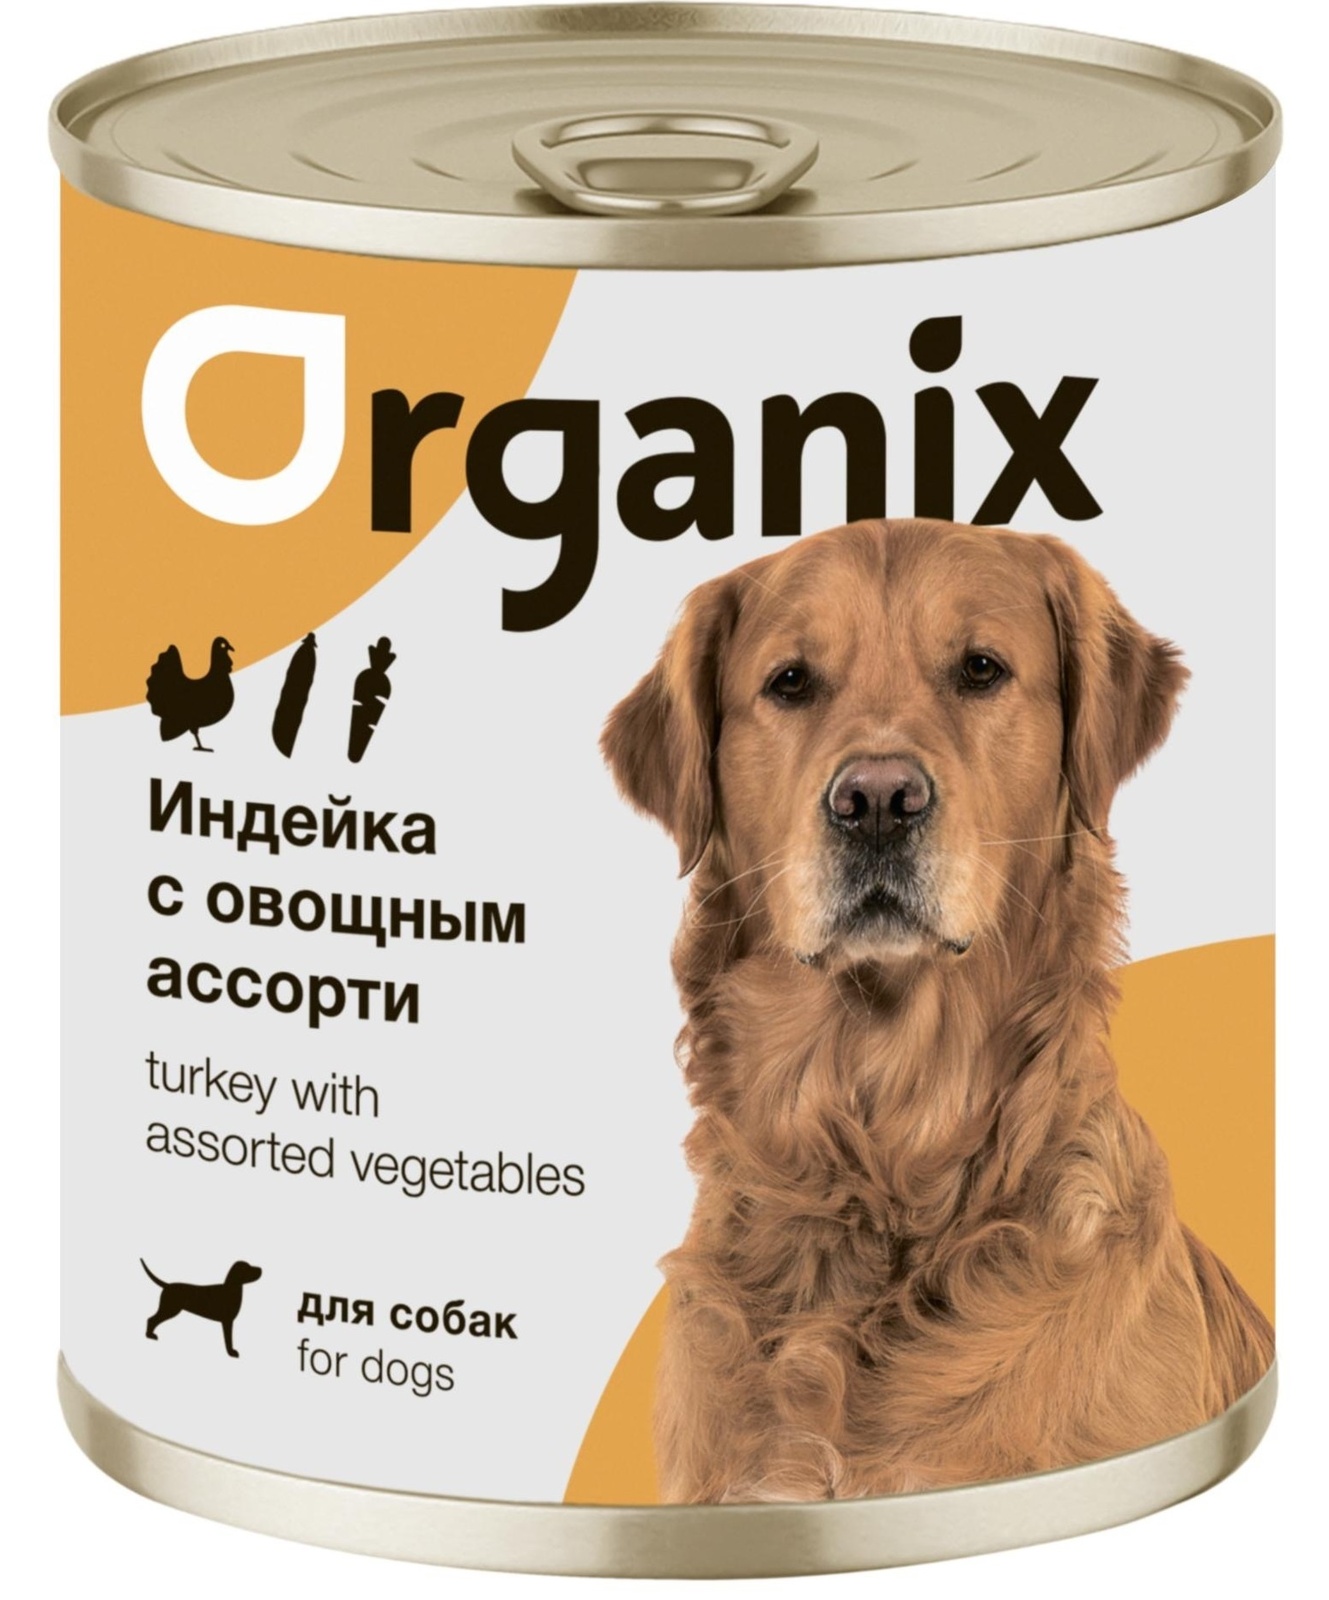 Organix консервы Organix консервы для собак Индейка с овощным ассорти (400 г) organix консервы organix консервы для собак фрикасе из гуся с яблоками и морковкой 400 г